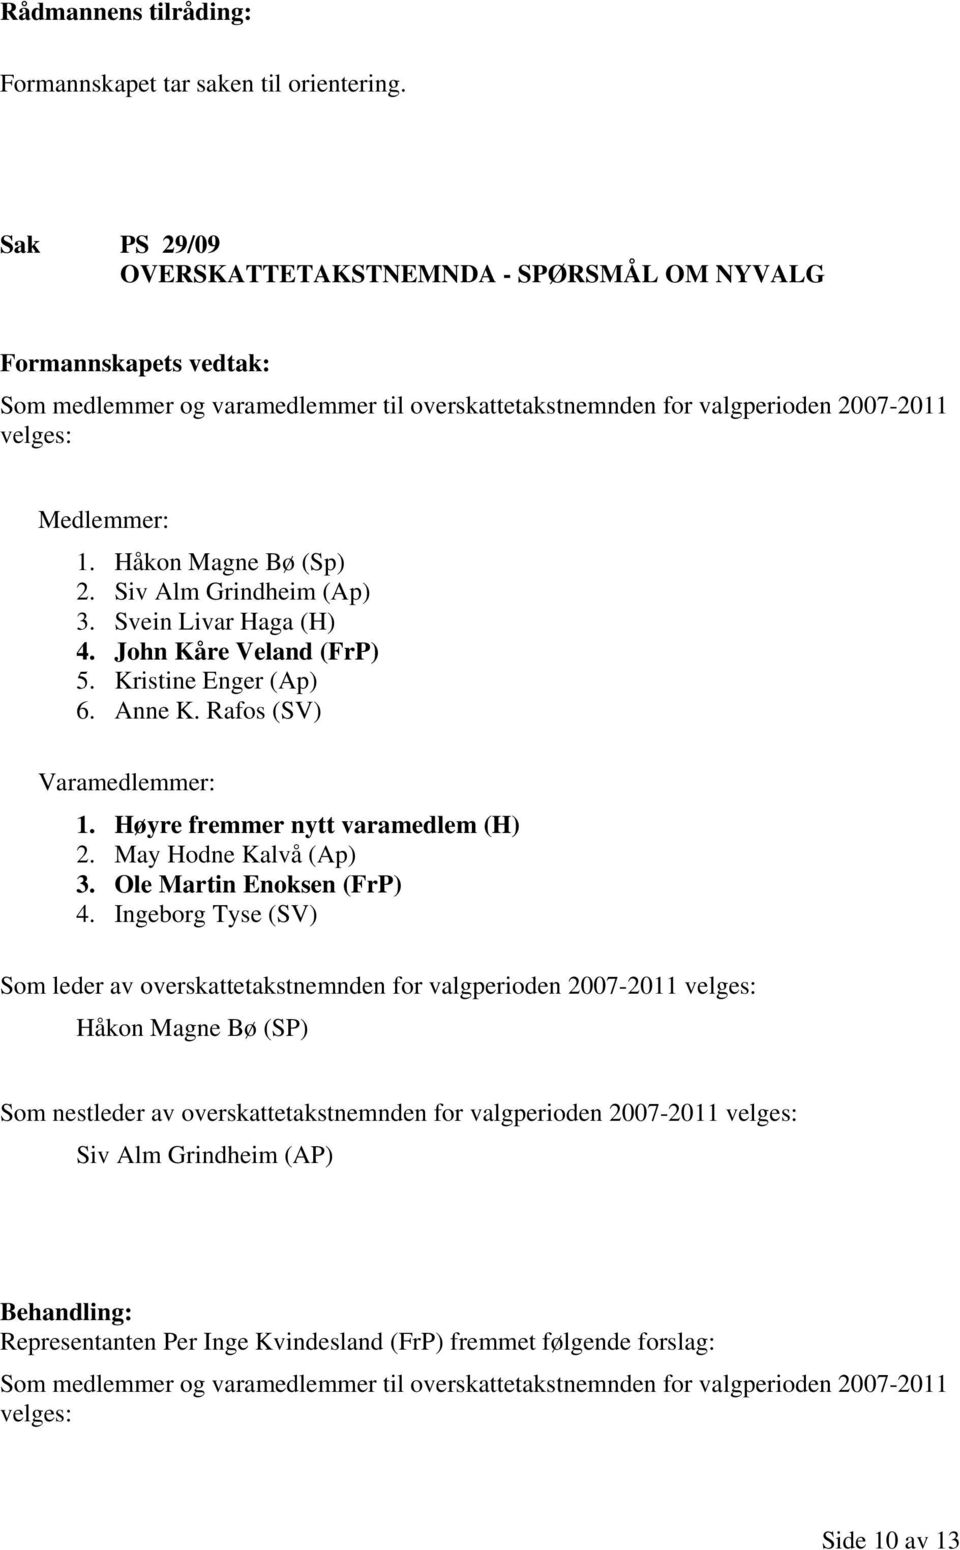 Siv Alm Grindheim (Ap) 3. Svein Livar Haga (H) 4. John Kåre Veland (FrP) 5. Kristine Enger (Ap) 6. Anne K. Rafos (SV) Varamedlemmer: 1. Høyre fremmer nytt varamedlem (H) 2. May Hodne Kalvå (Ap) 3.